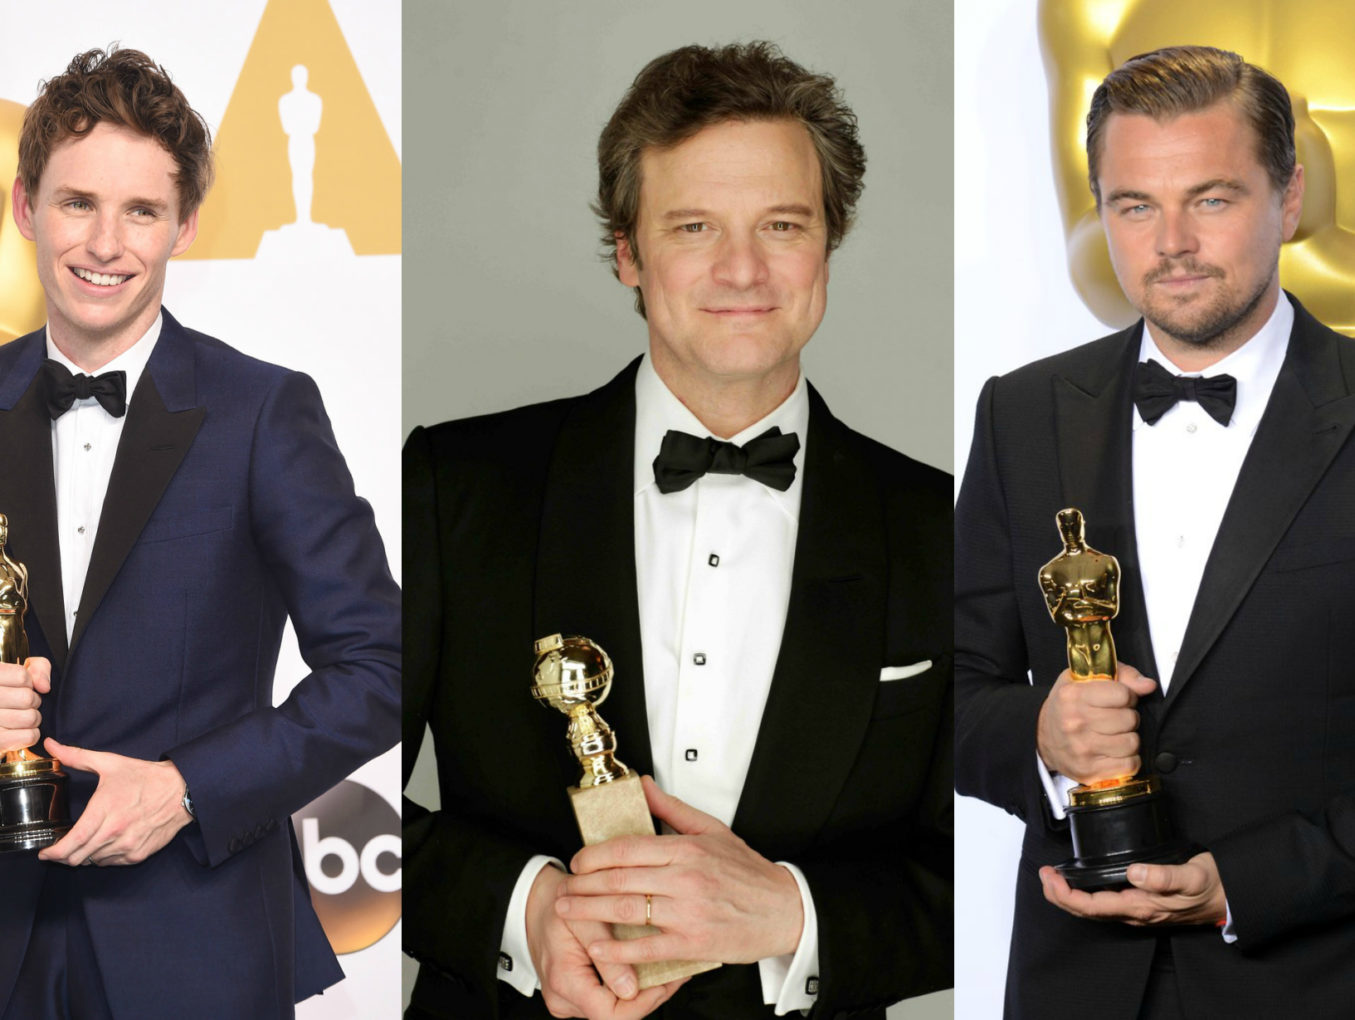 "Оскар": актеры, которые получили статуэтку за последние 10 лет